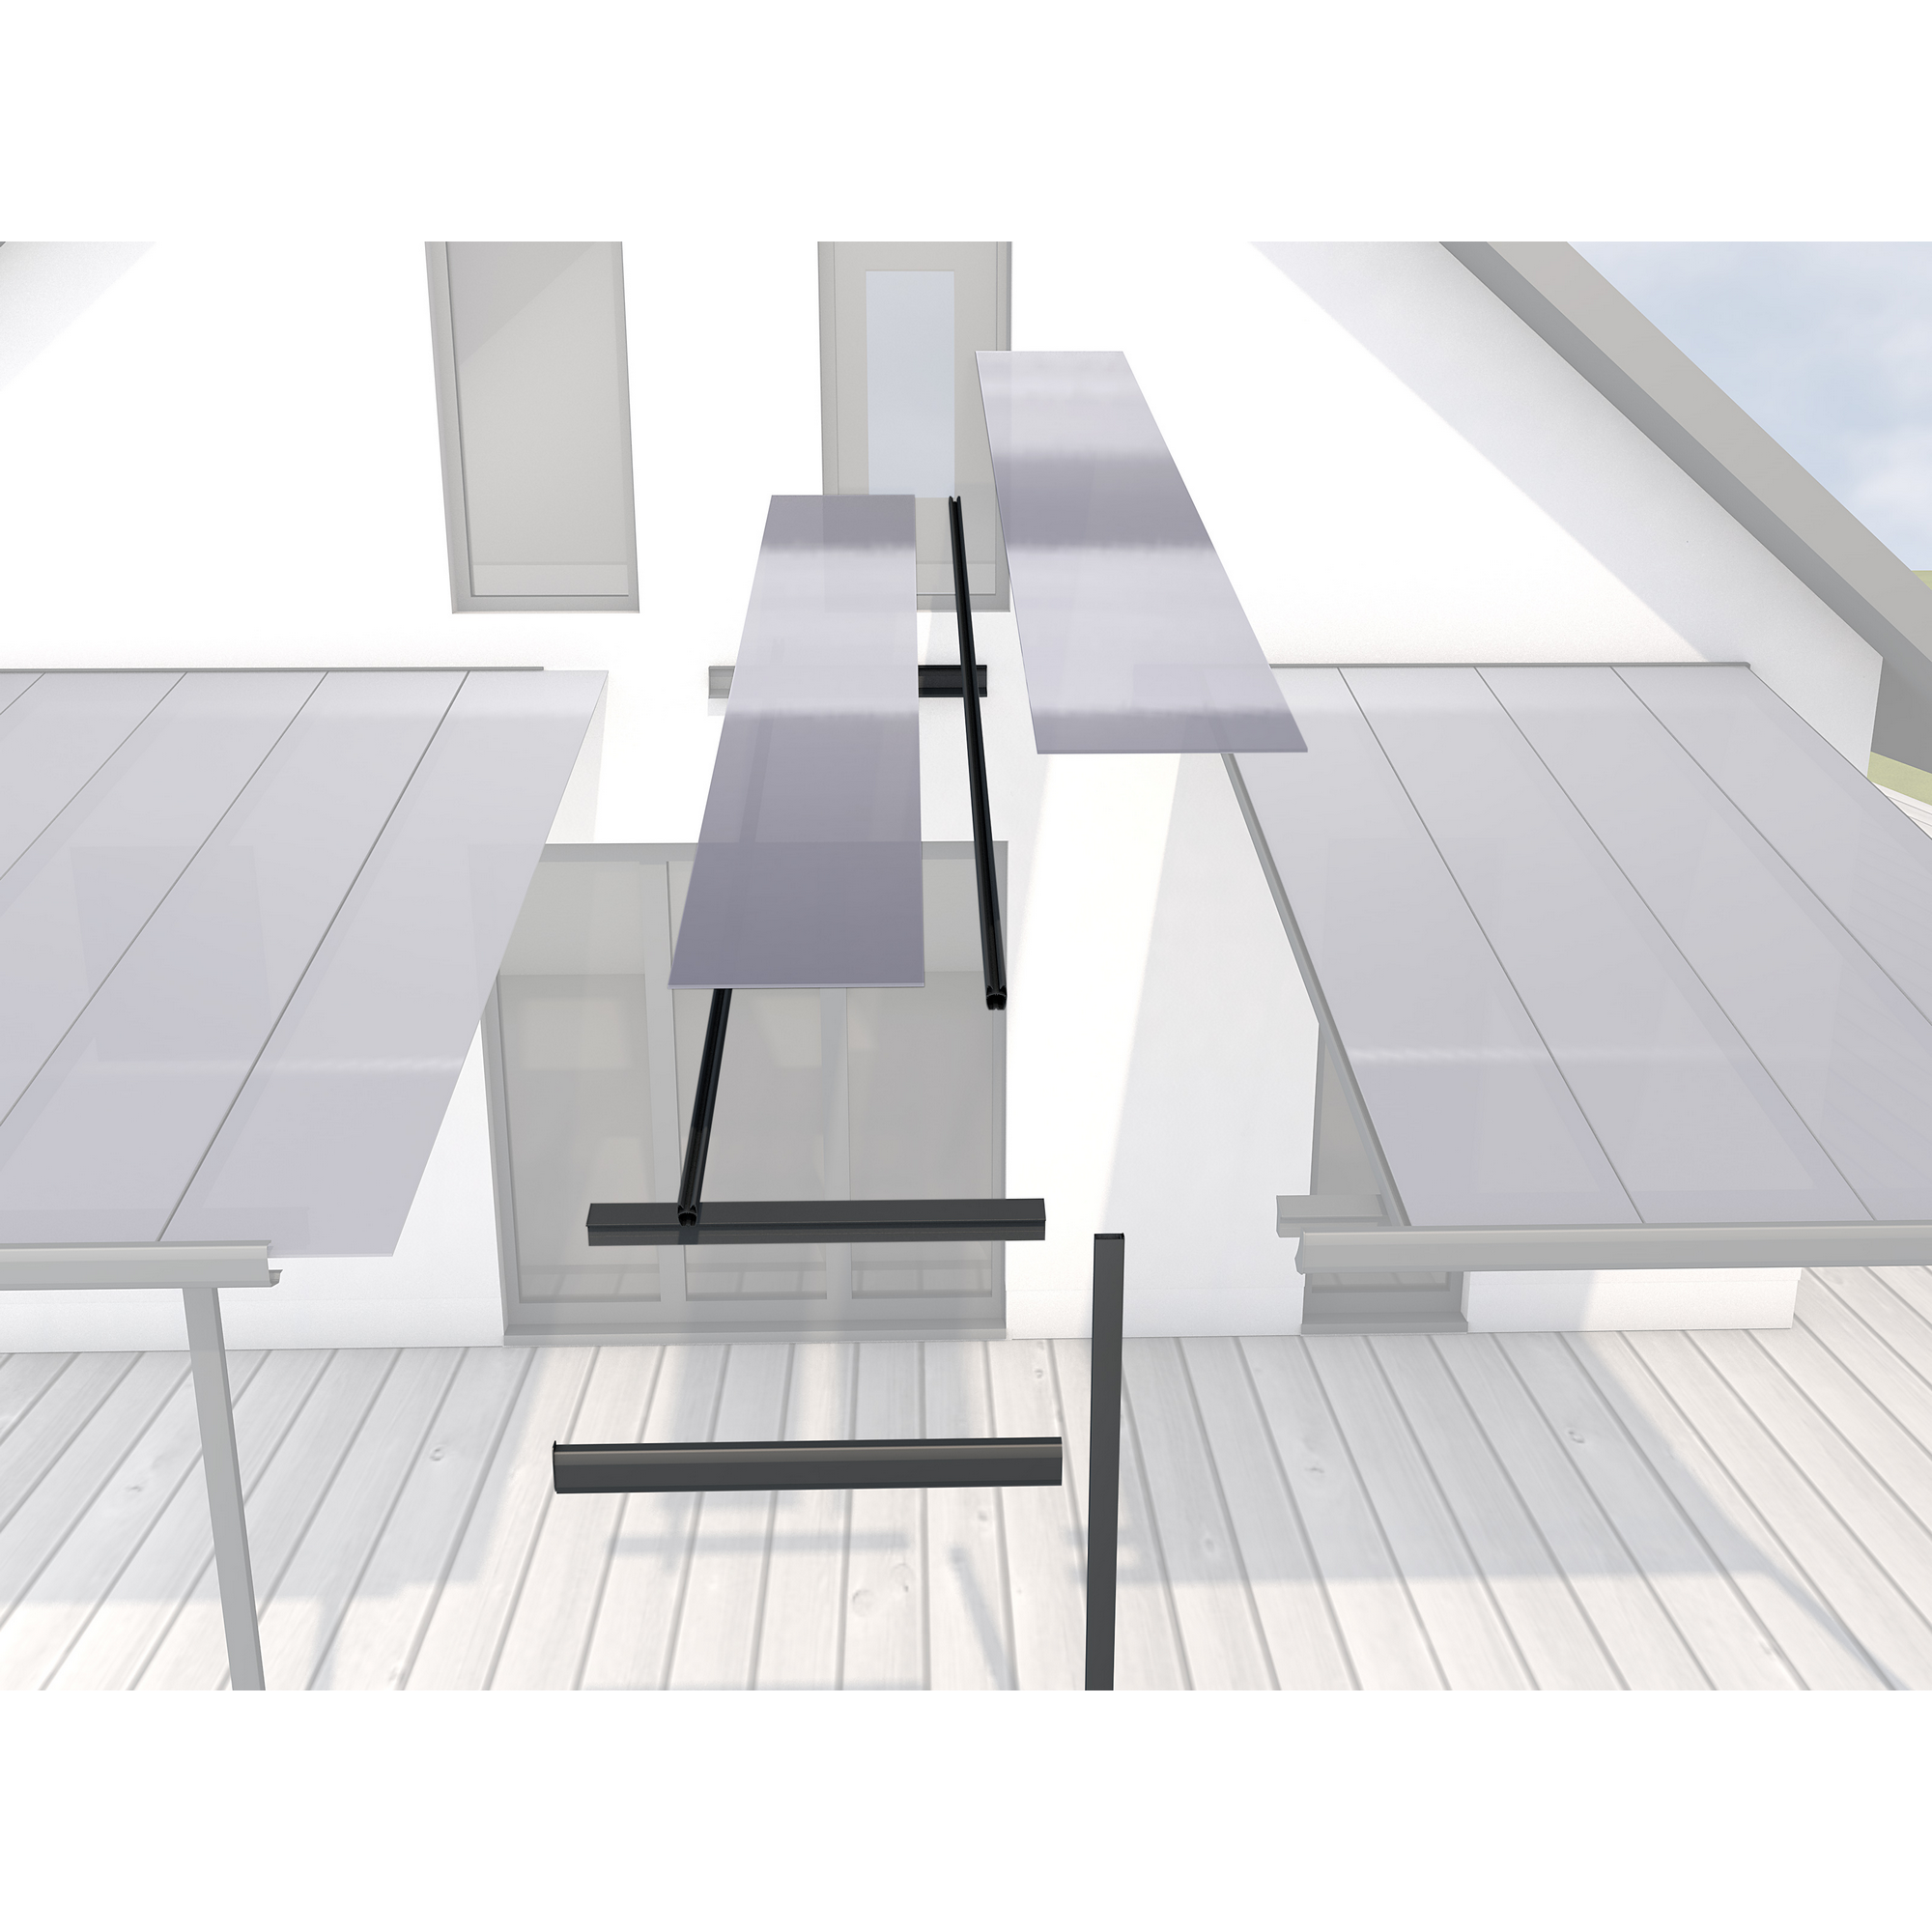 Erweiterungsmodul für Terrassenüberdachung 'Typ D, E und F' 120 x 406 cm anthrazit + product picture